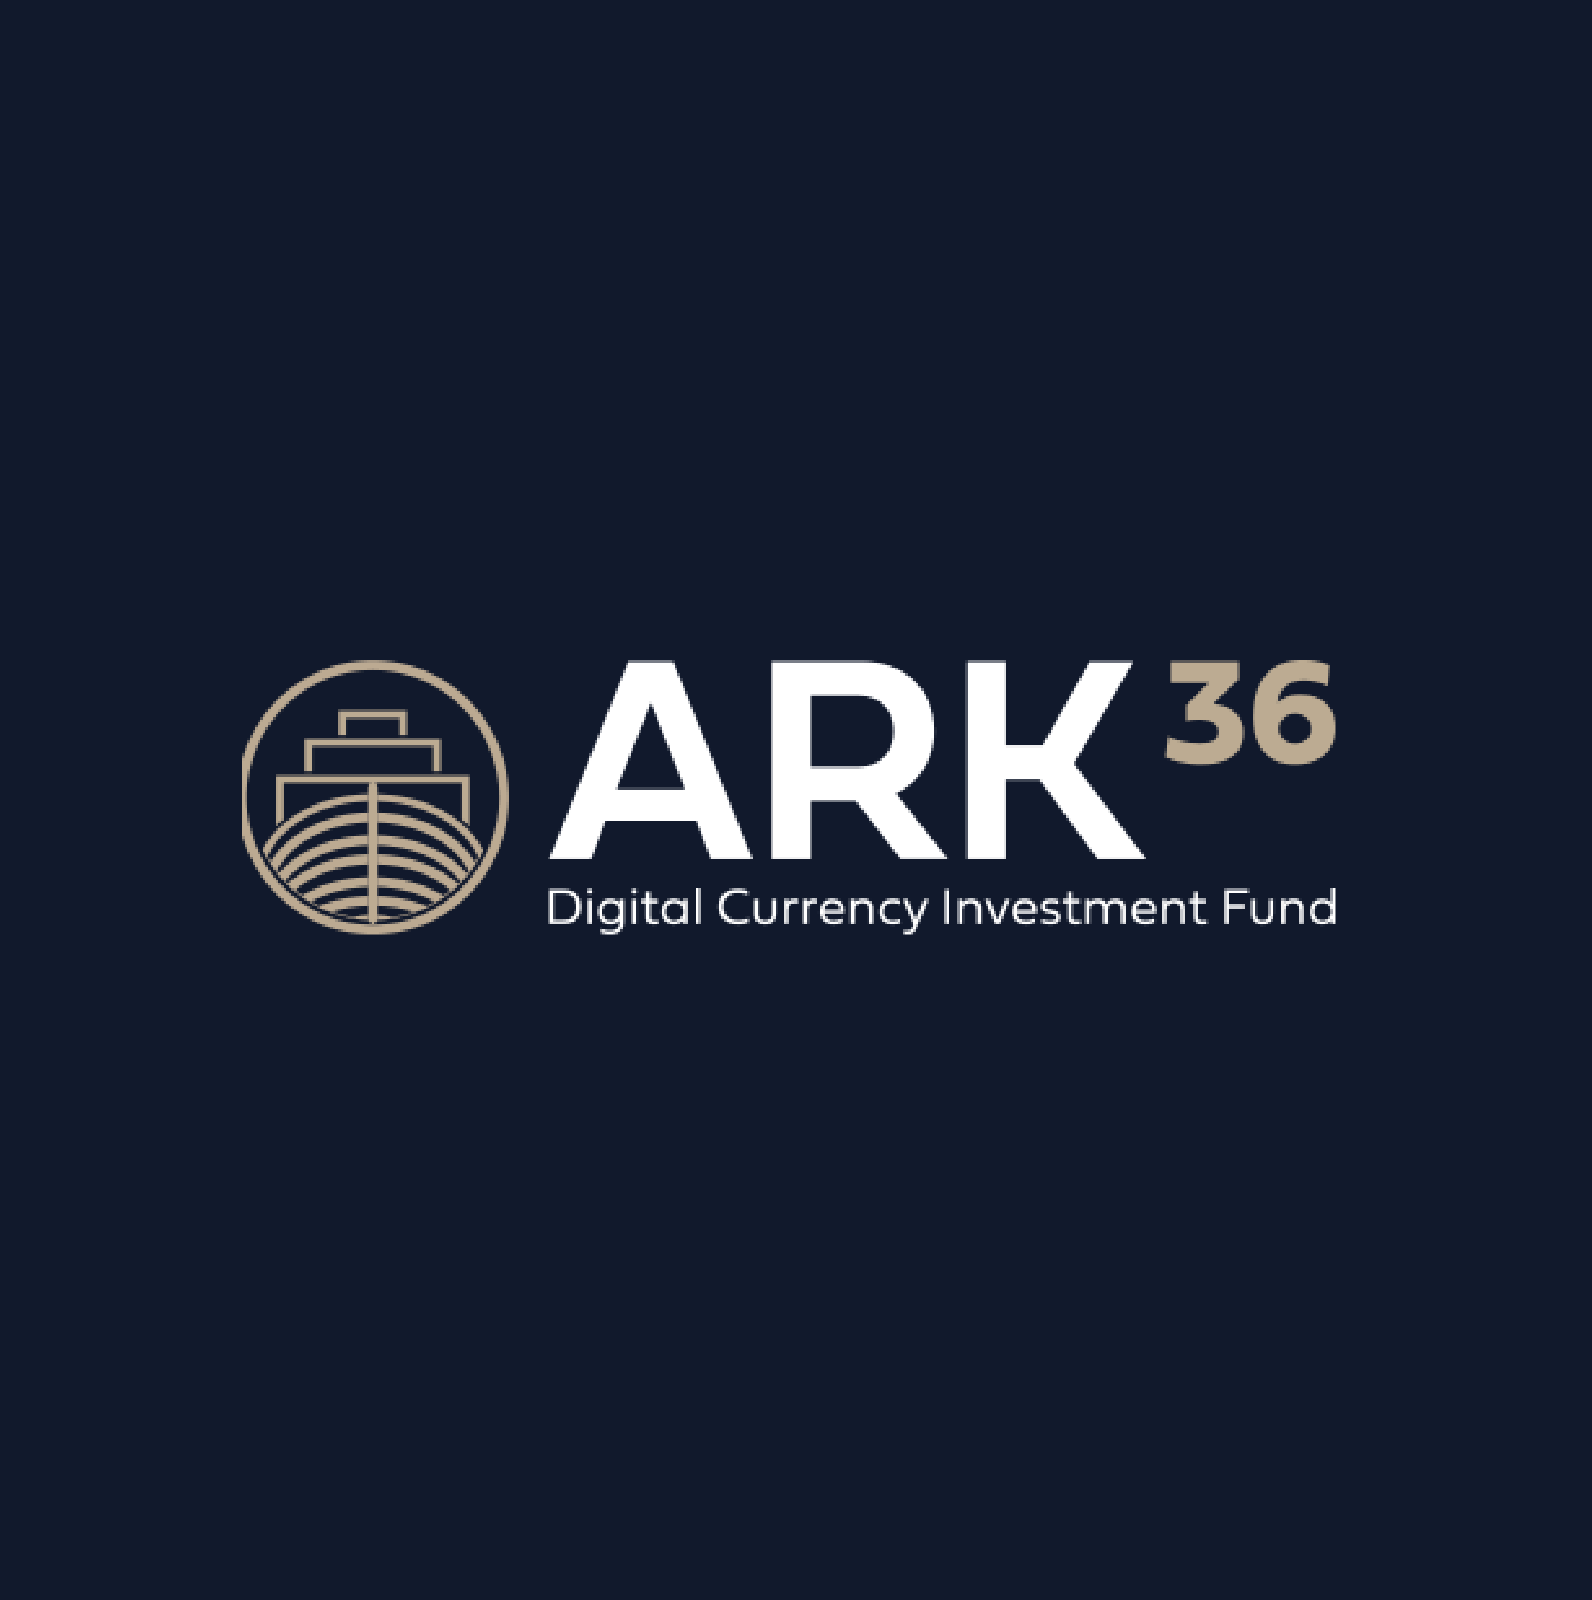 Visuel identitet til ARK36 på Cypern